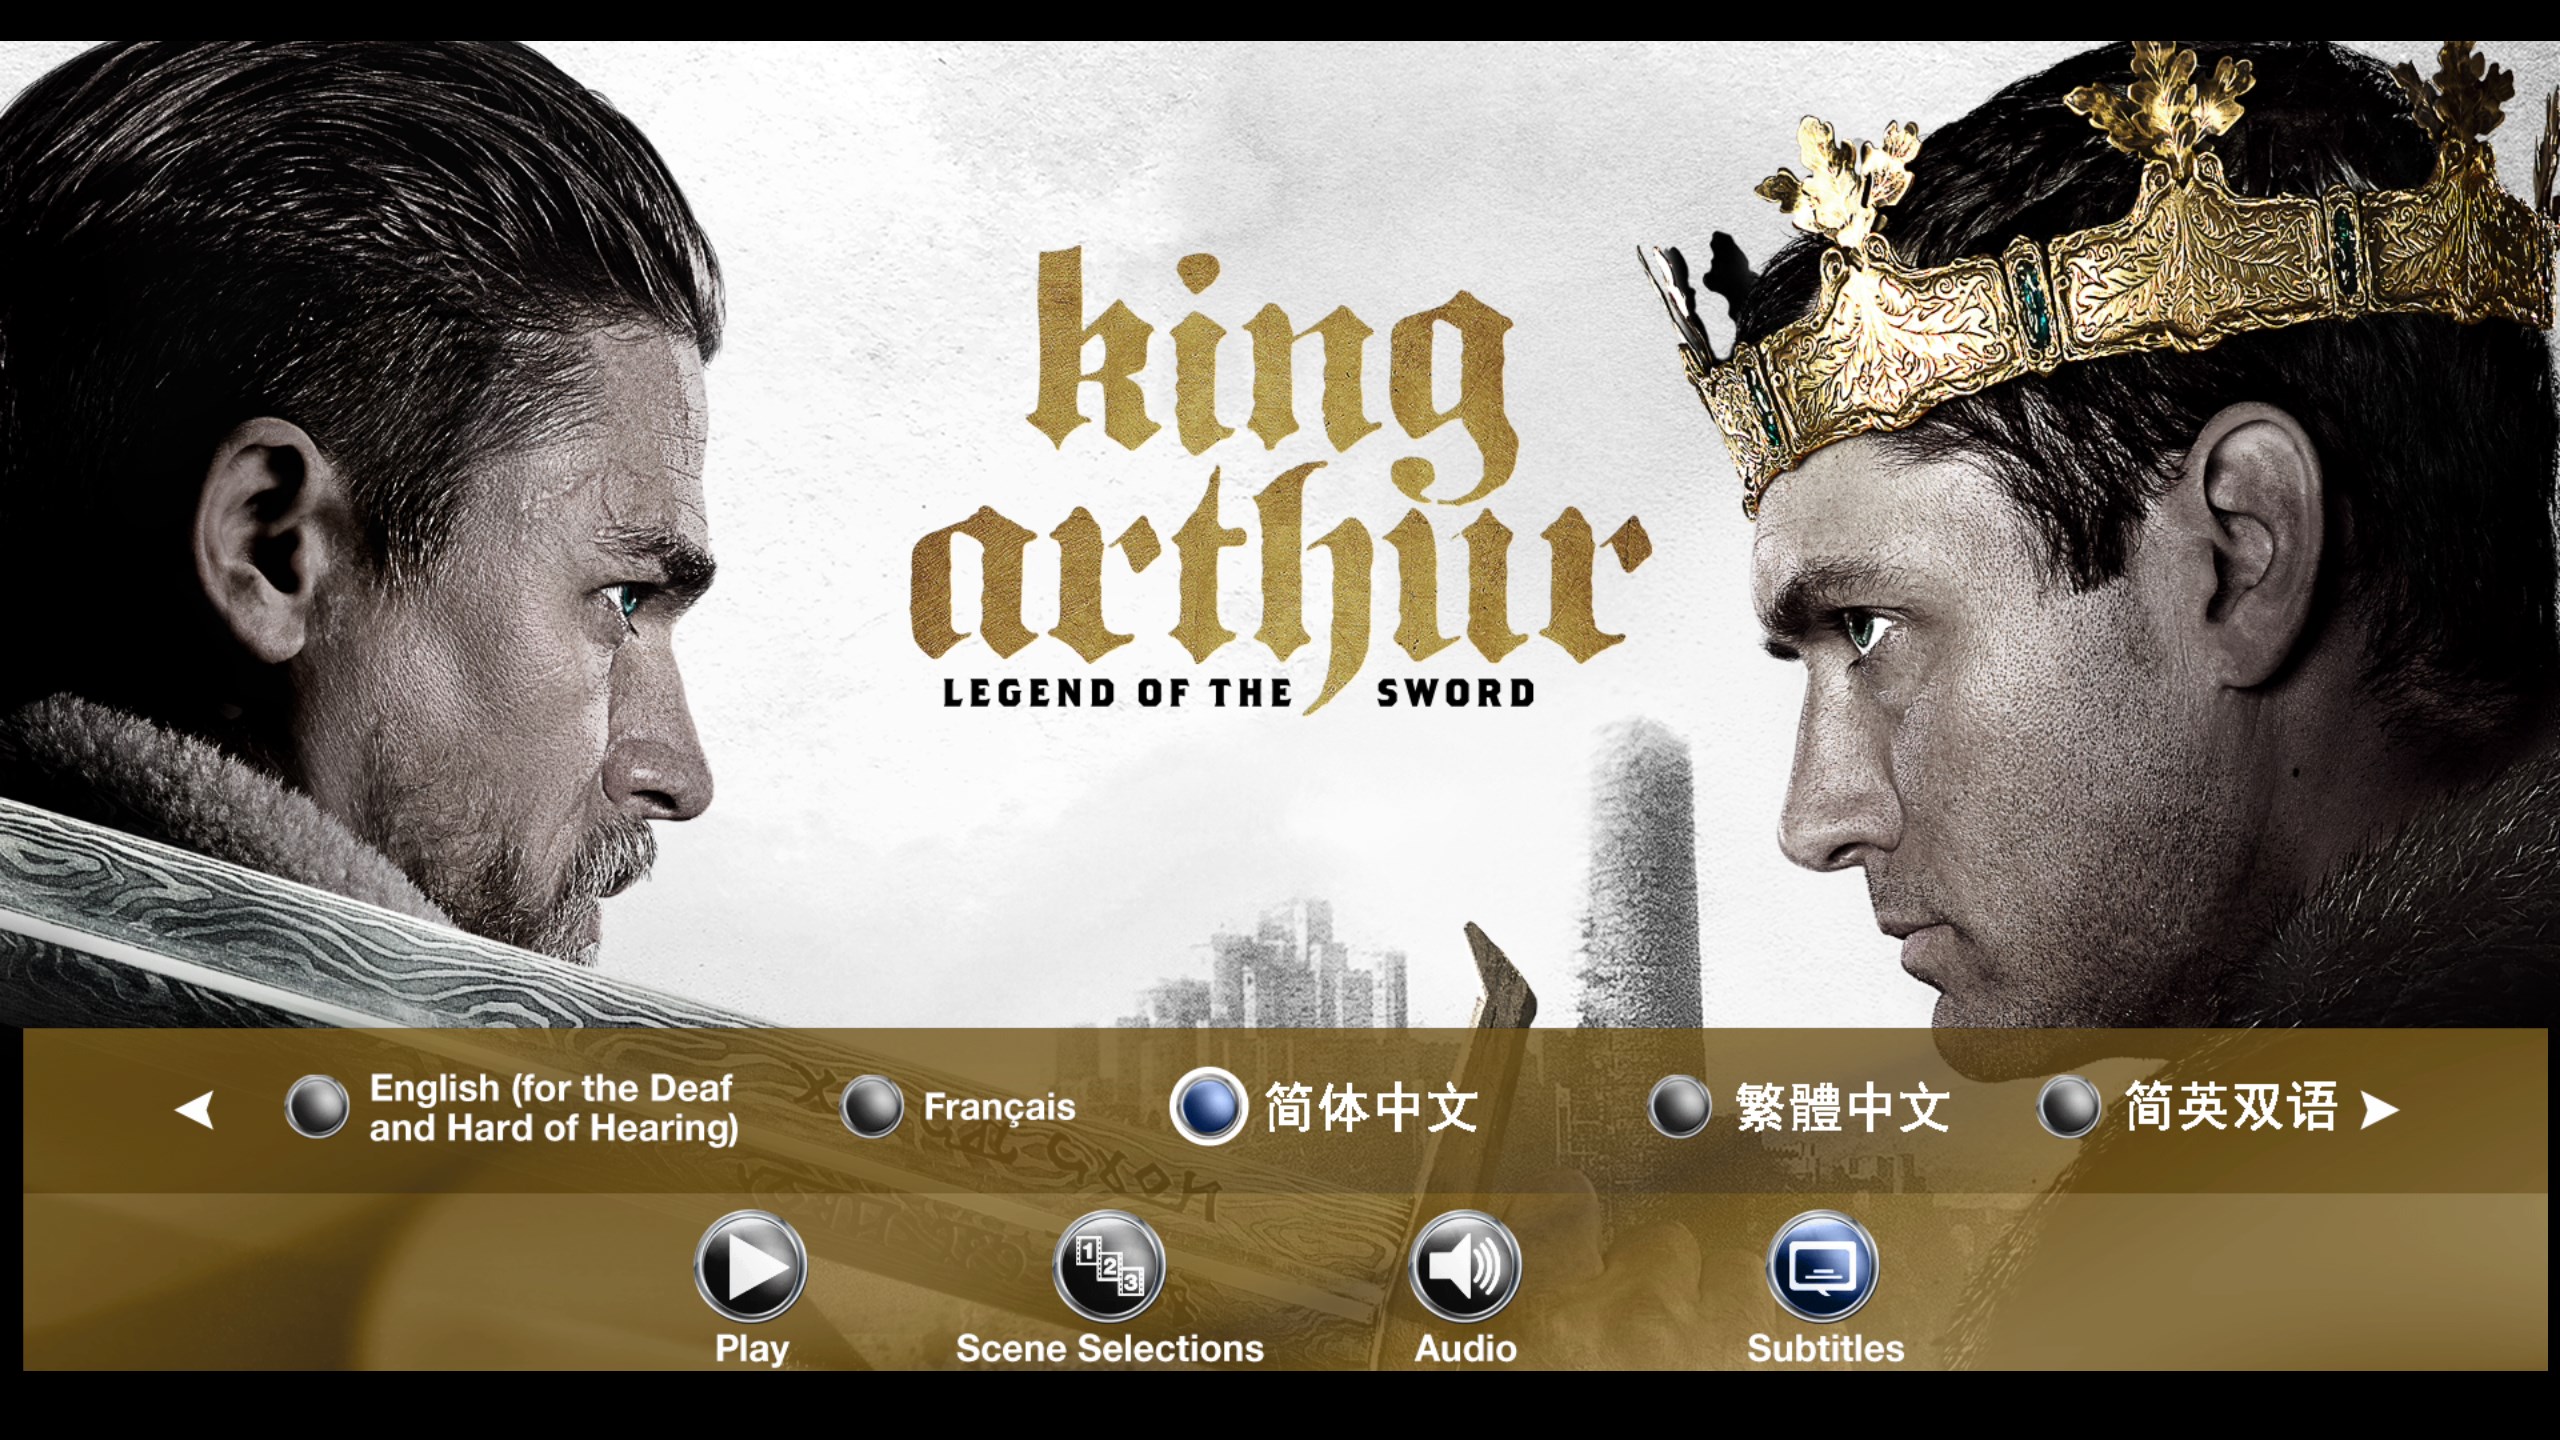 亚瑟王：斗兽争霸/亚瑟王：圣剑传奇【3D原盘DIY简繁/双语字幕】 King Arthur Legend of the Sword 2017 3D 1080p Blu-ray AVC TrueHD7.1 Atmos-Thor@HDSky    [40.86 GB ]-4.jpg